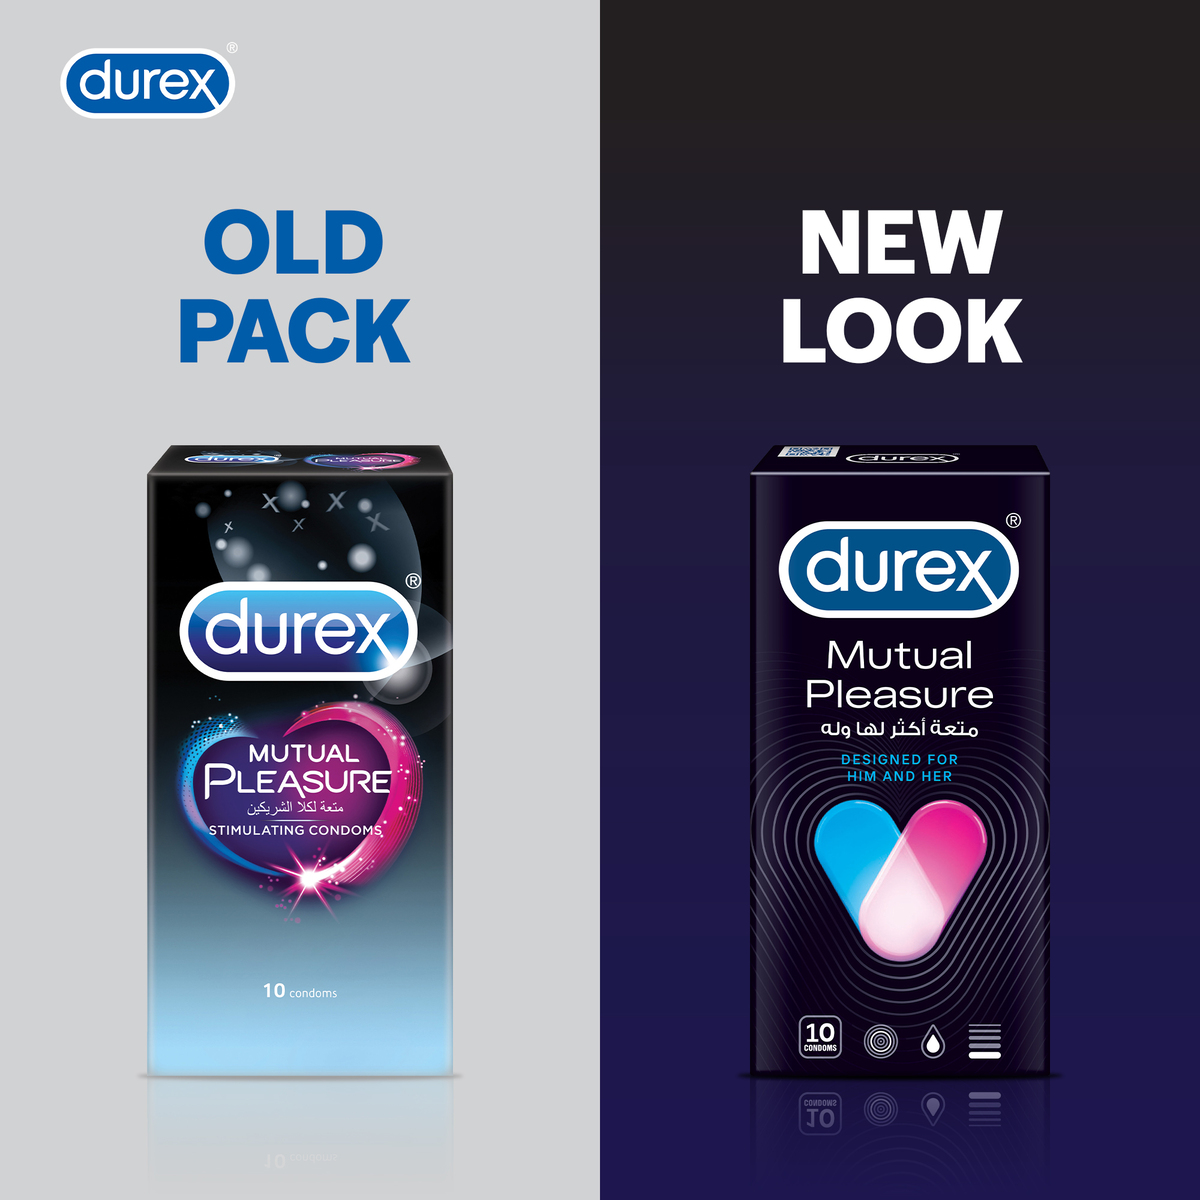 Durex Perfomax Intense Condom 10 pcs